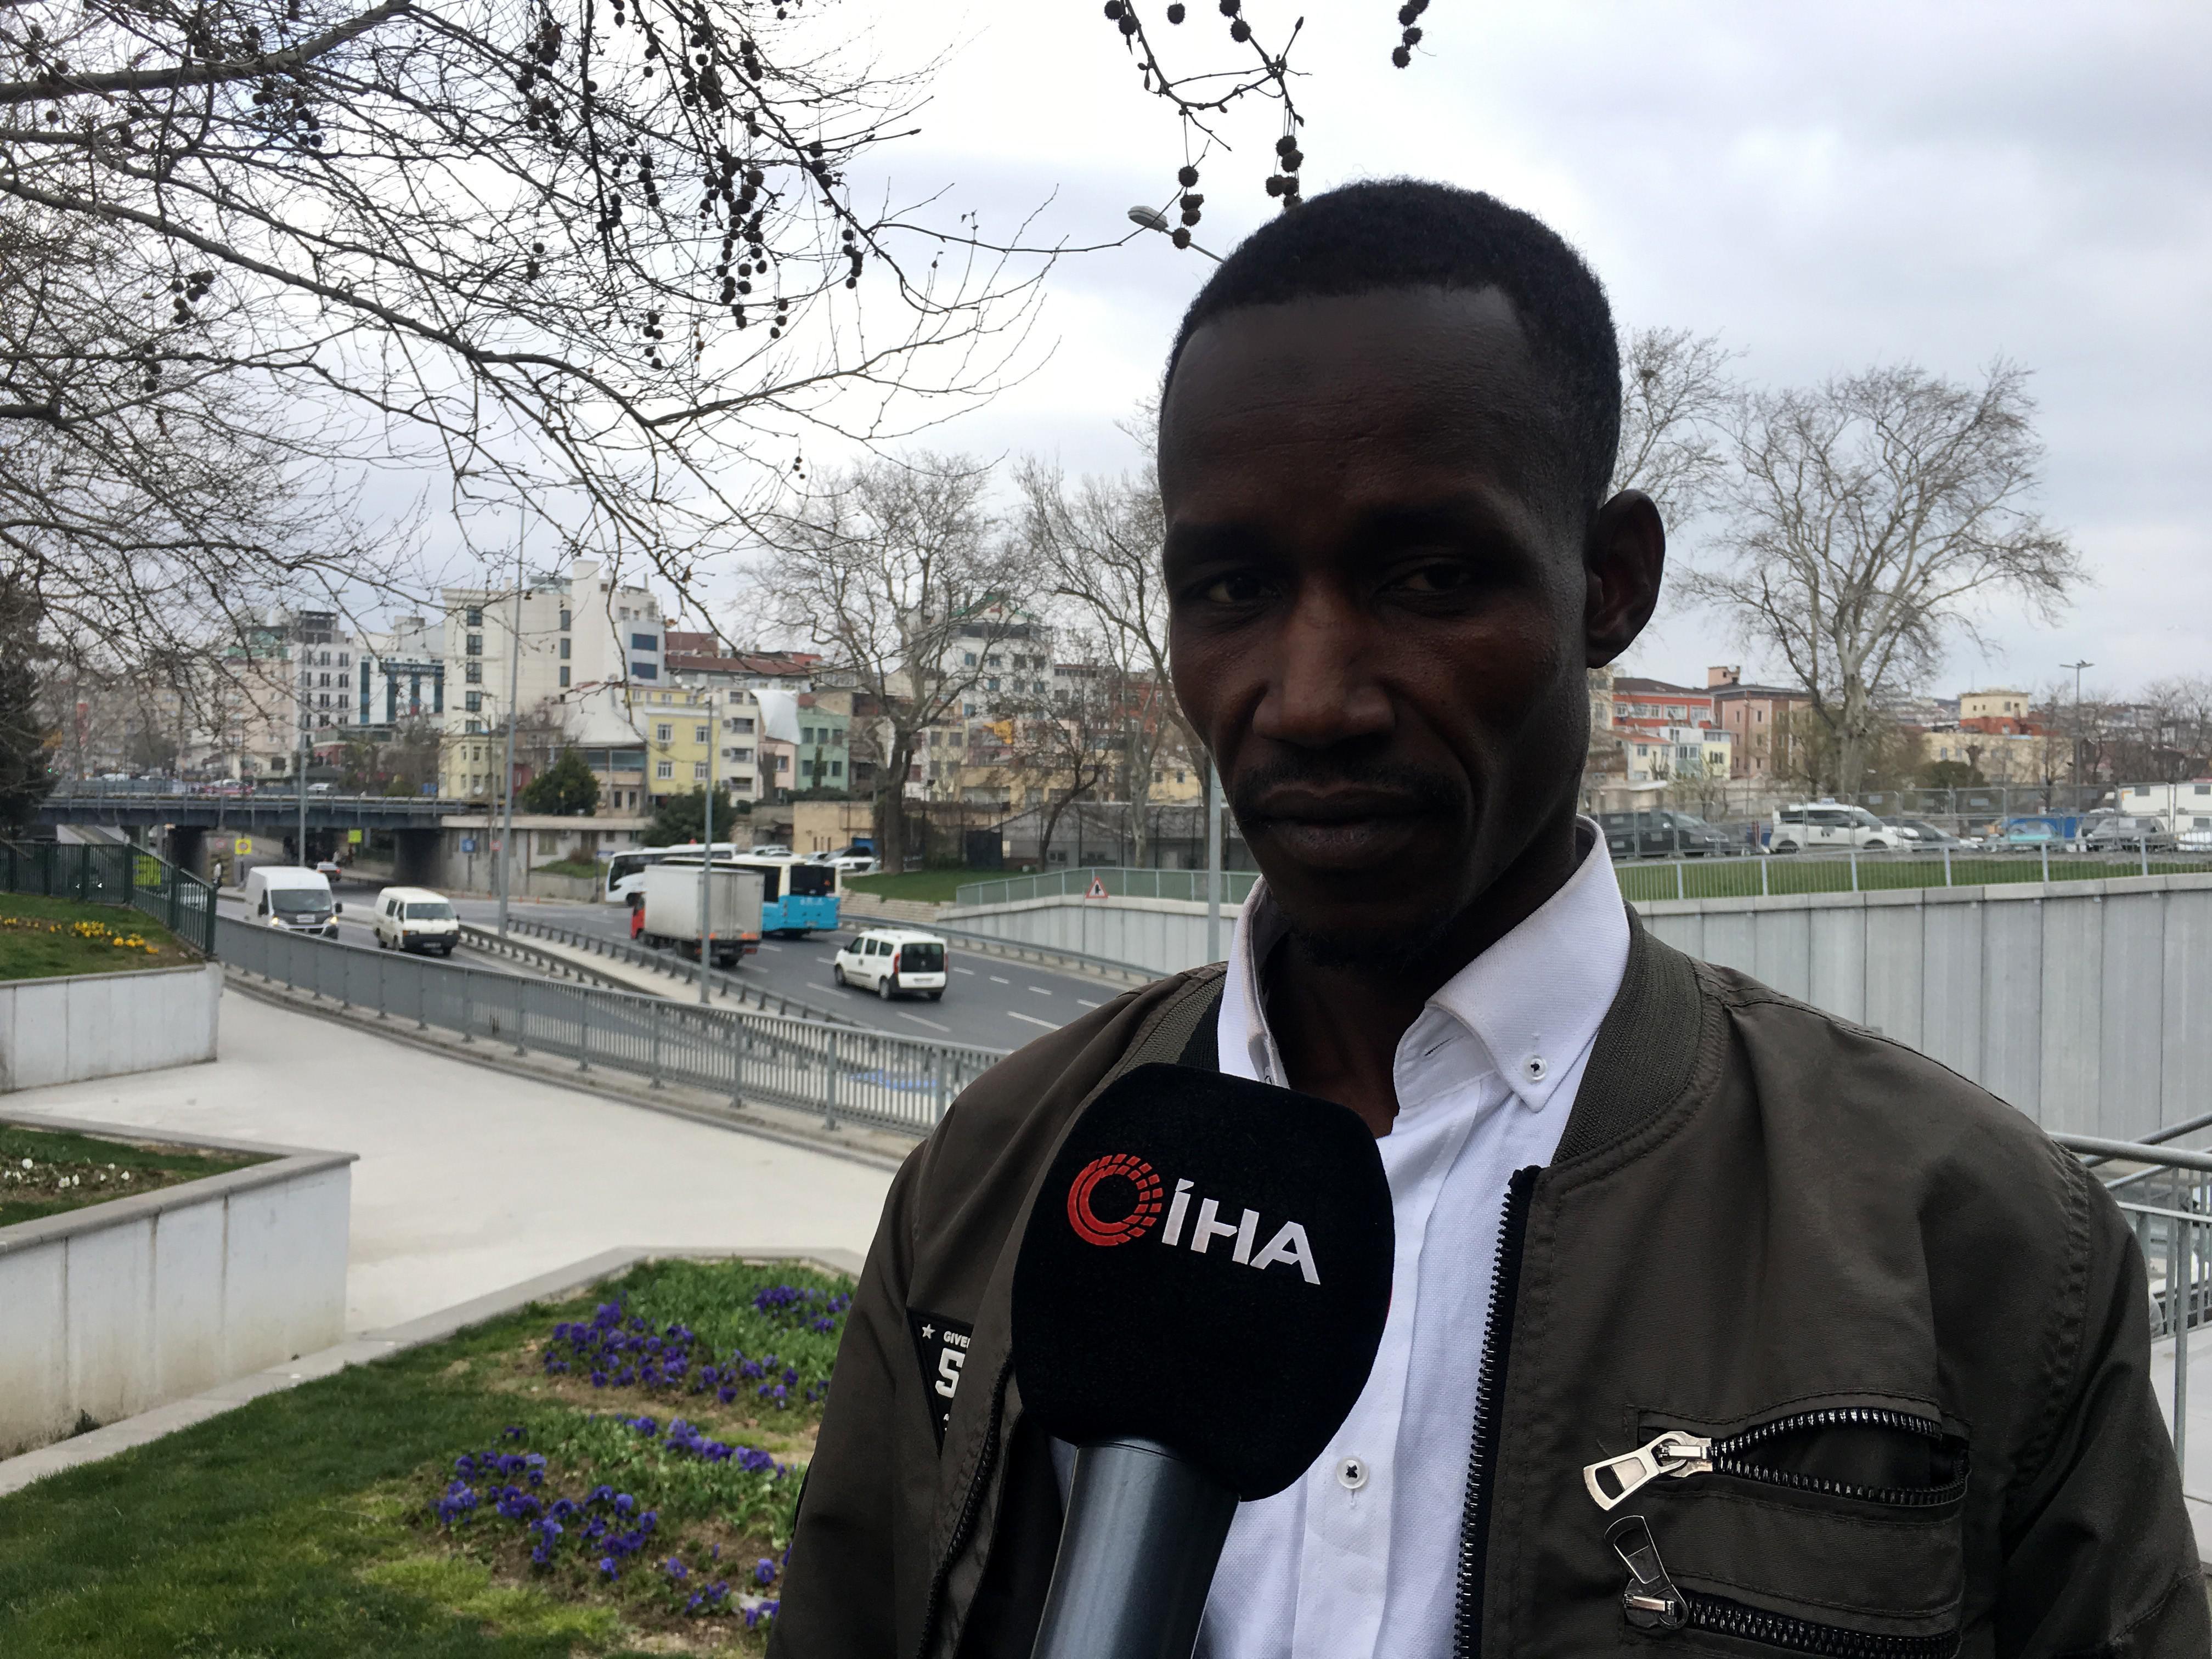 Senegalli yolcuya sözleri şoke etmişti Diğer taksiciler bu hale getirdi